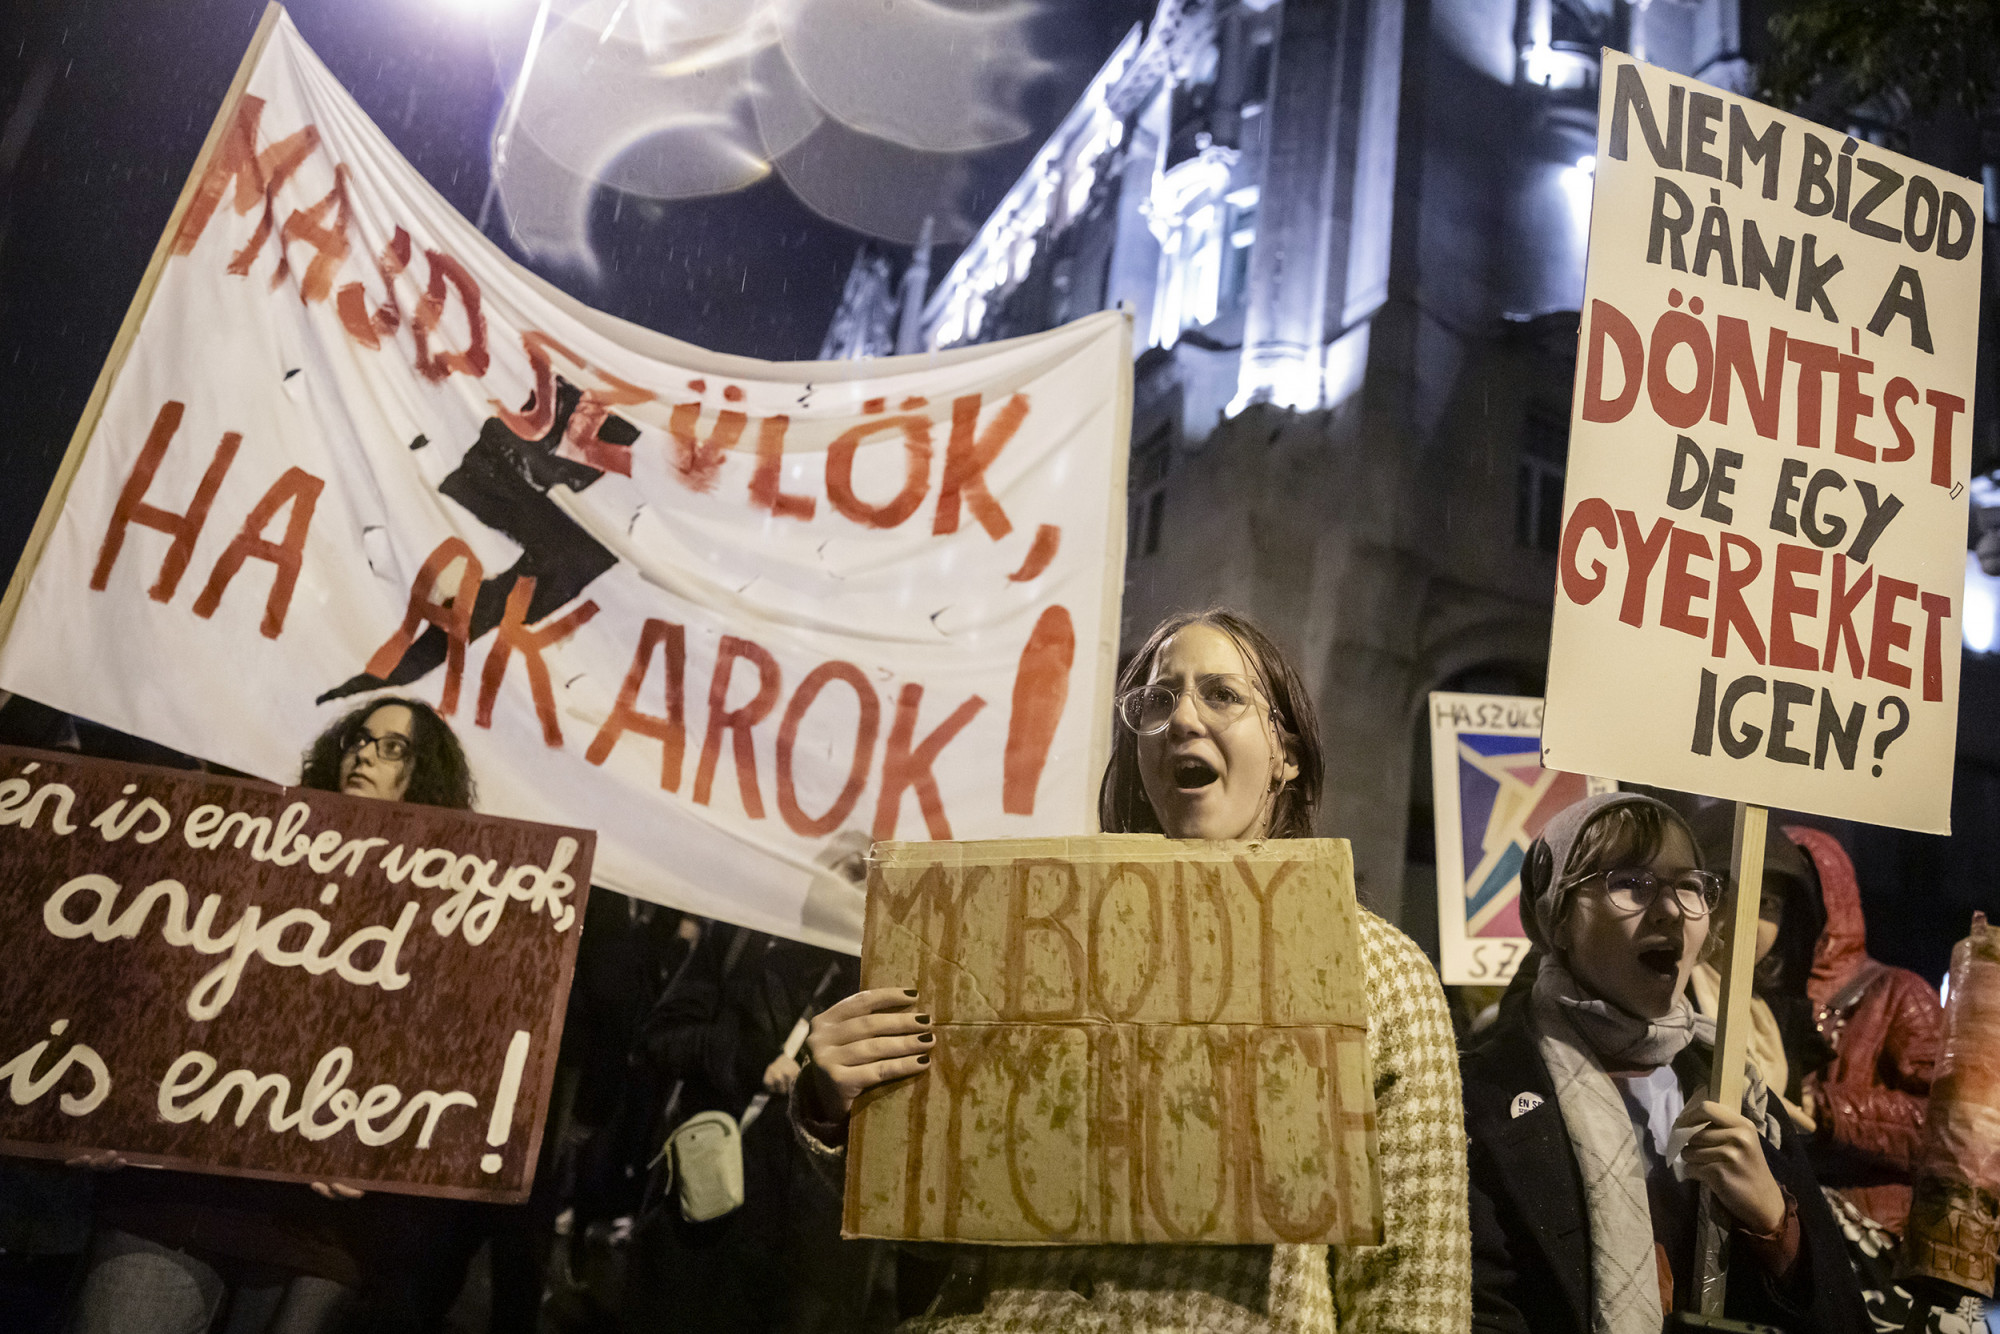 "Sándor, Sándor, tűnés a pinámból" - Több ezren tüntettek legális és biztonságos abortuszért a Parlament előtt